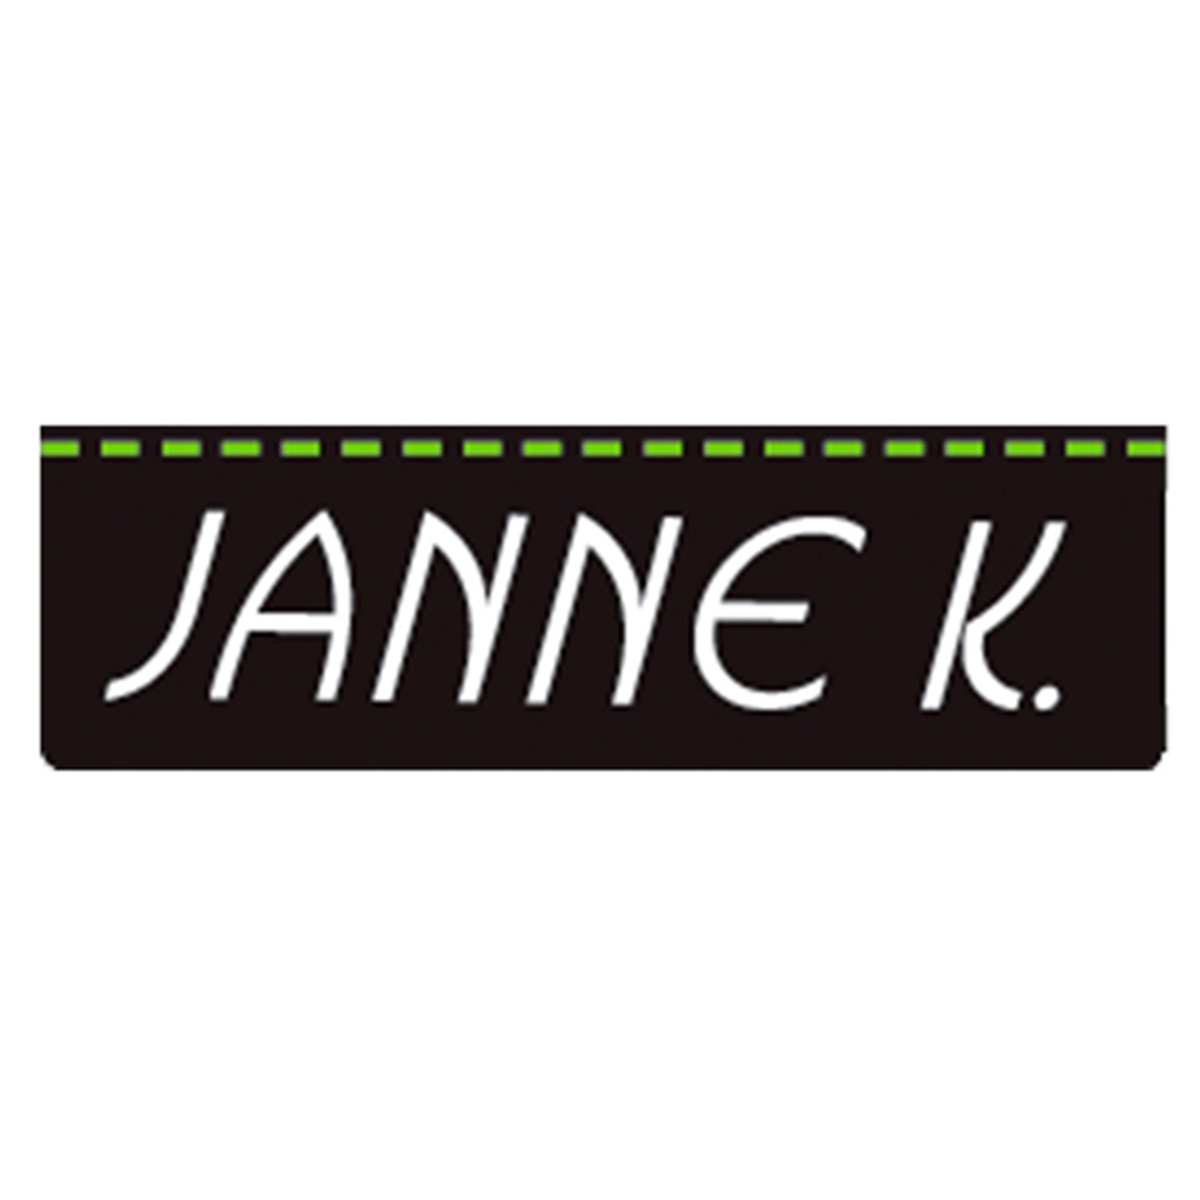 Janne K